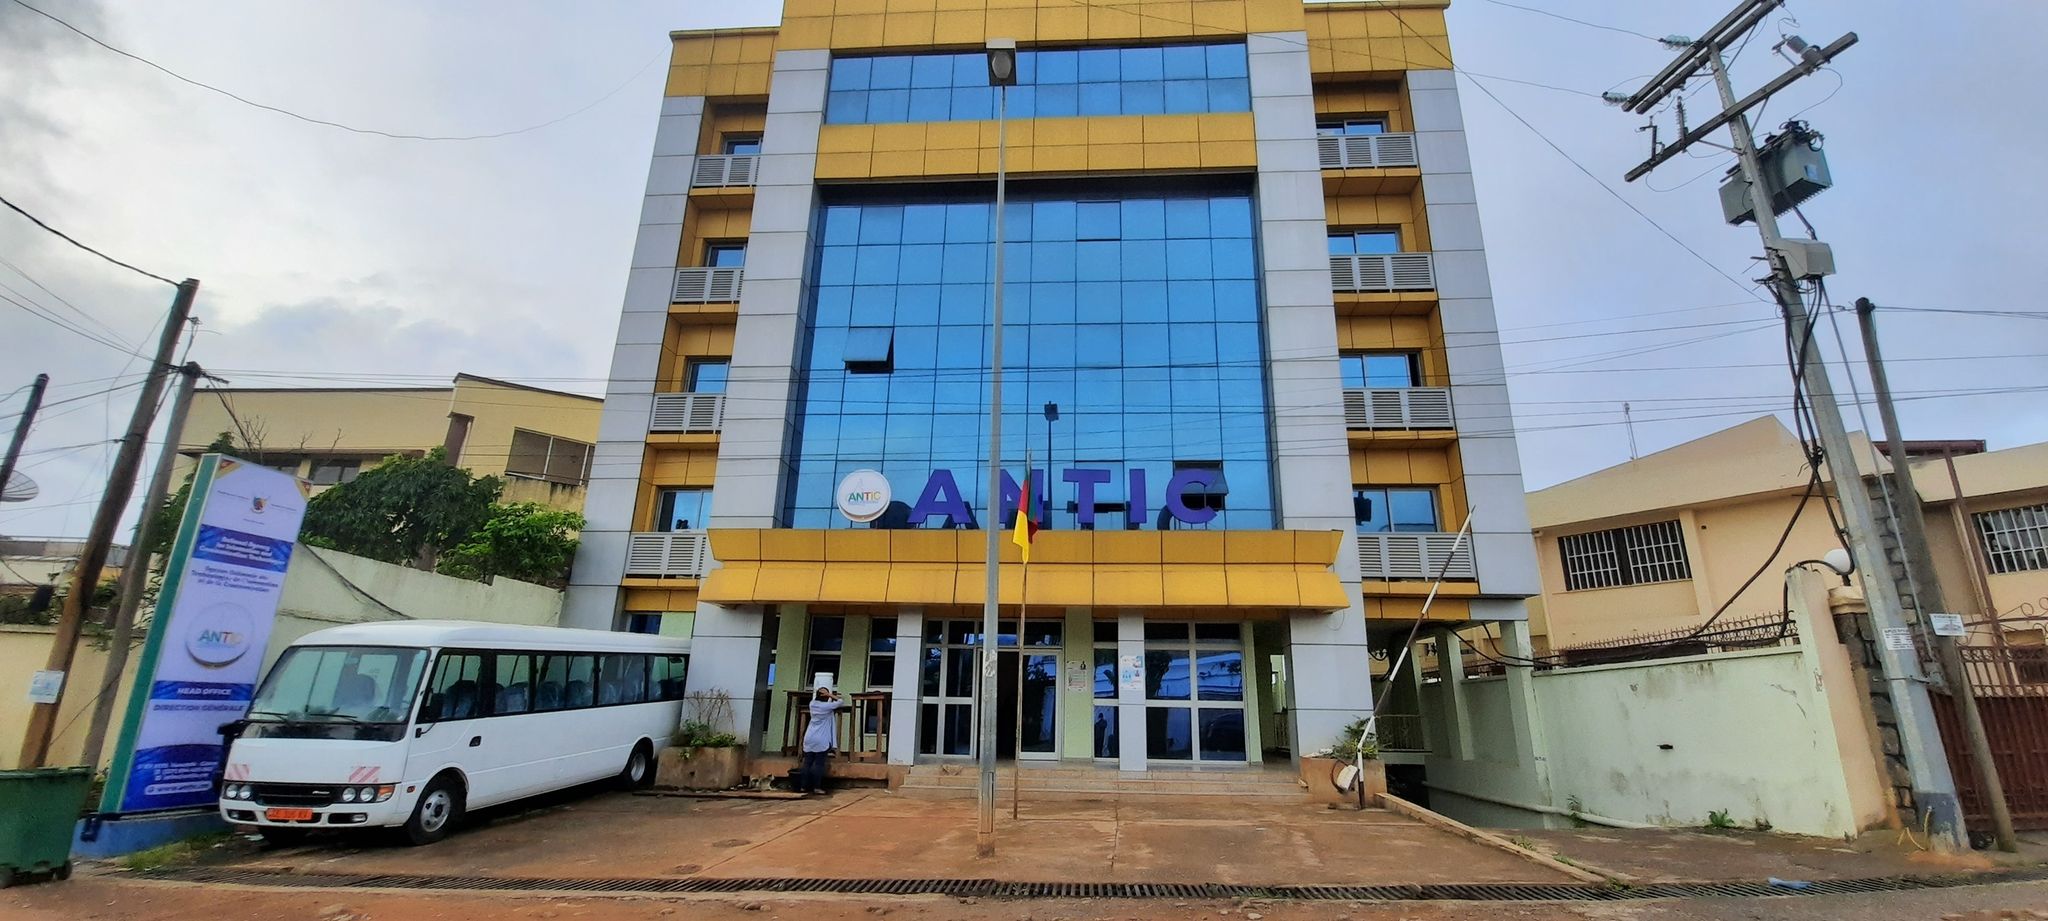 Cameroun : Grâce au partenariat avec META, l’ANTIC a fermé 496 faux comptes usurpant l’identité des hauts commis de l’État sur les réseaux sociaux